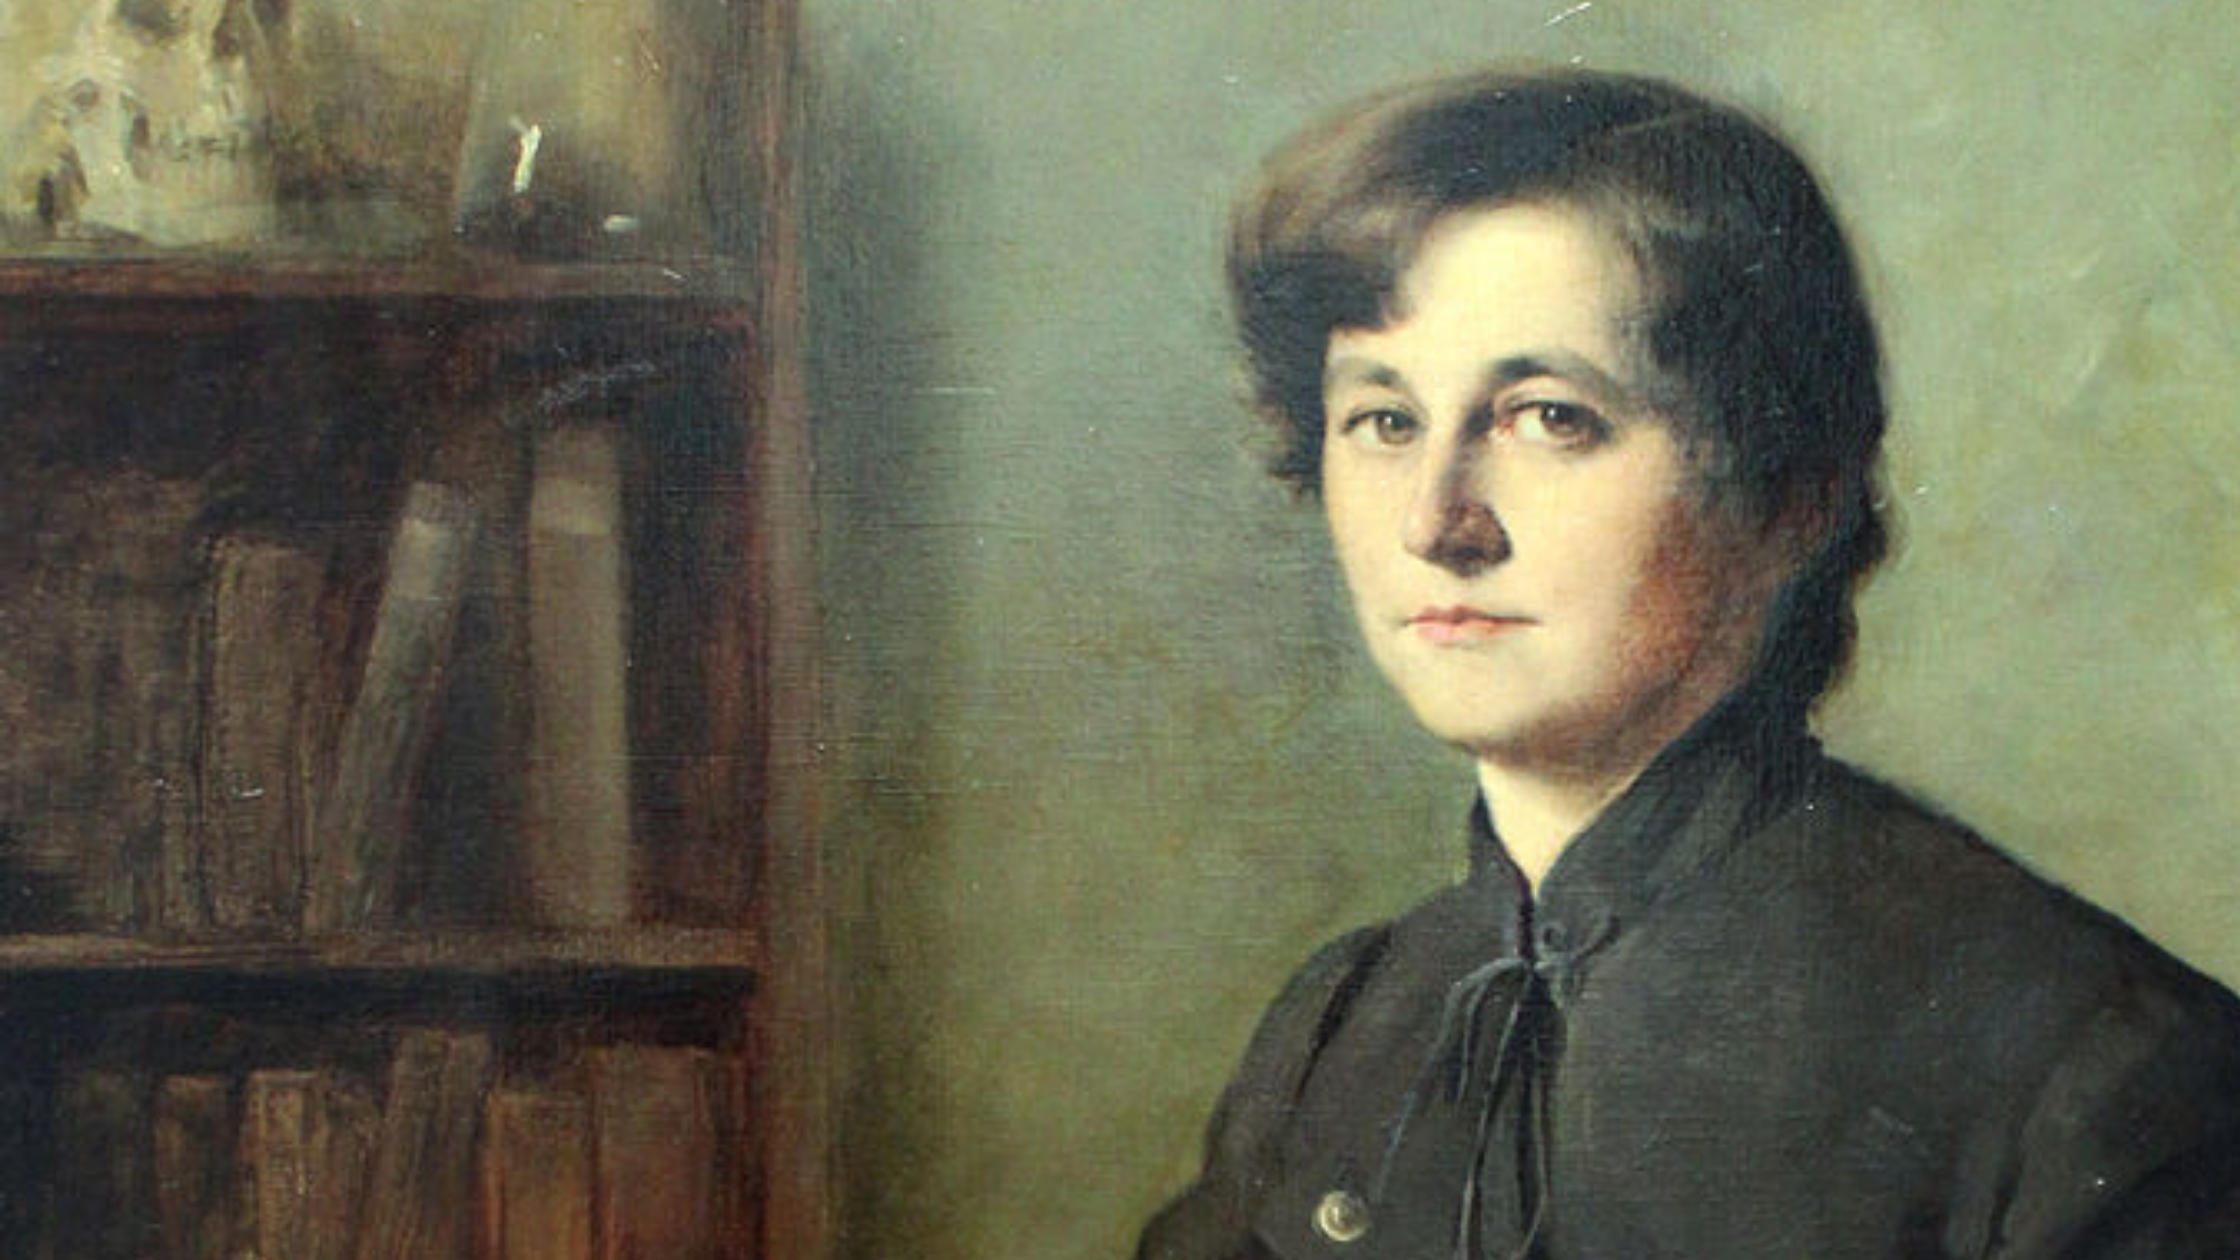 Die Ärztin, der die Frauenbewegung vertraute: Dr. med. Elisabeth Winterhalter (1856-1952)